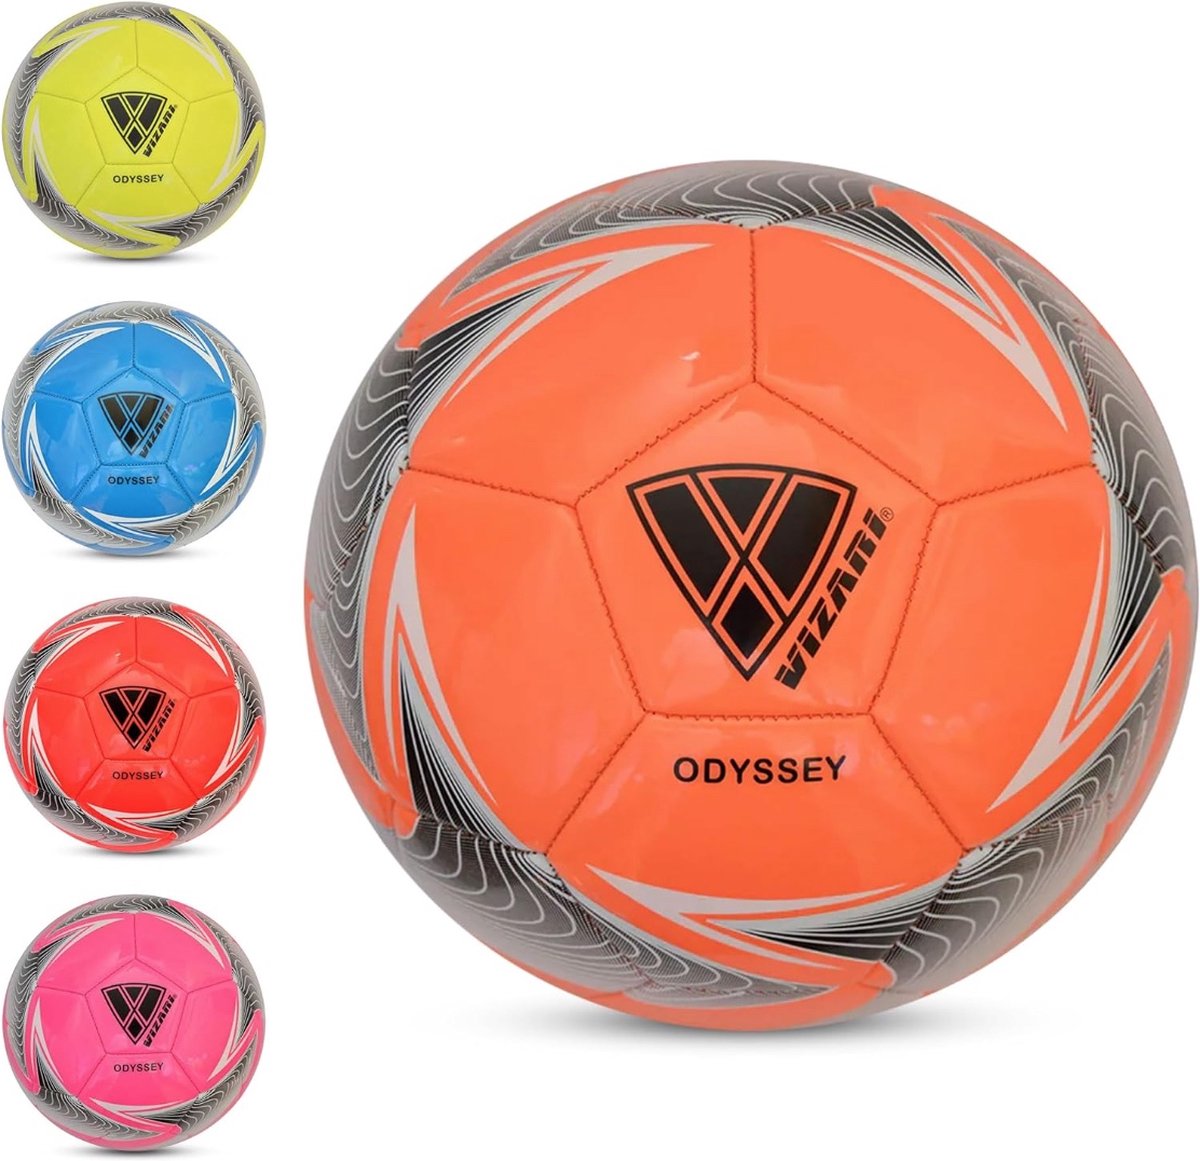 VIZARI ODYSSEY Voetbal | Oranje | Maat 5 | Unieke Grafische Ontwerpen | Voetballen voor Kinderen & Volwassenen | Verkrijgbaar in 4 Kleuren